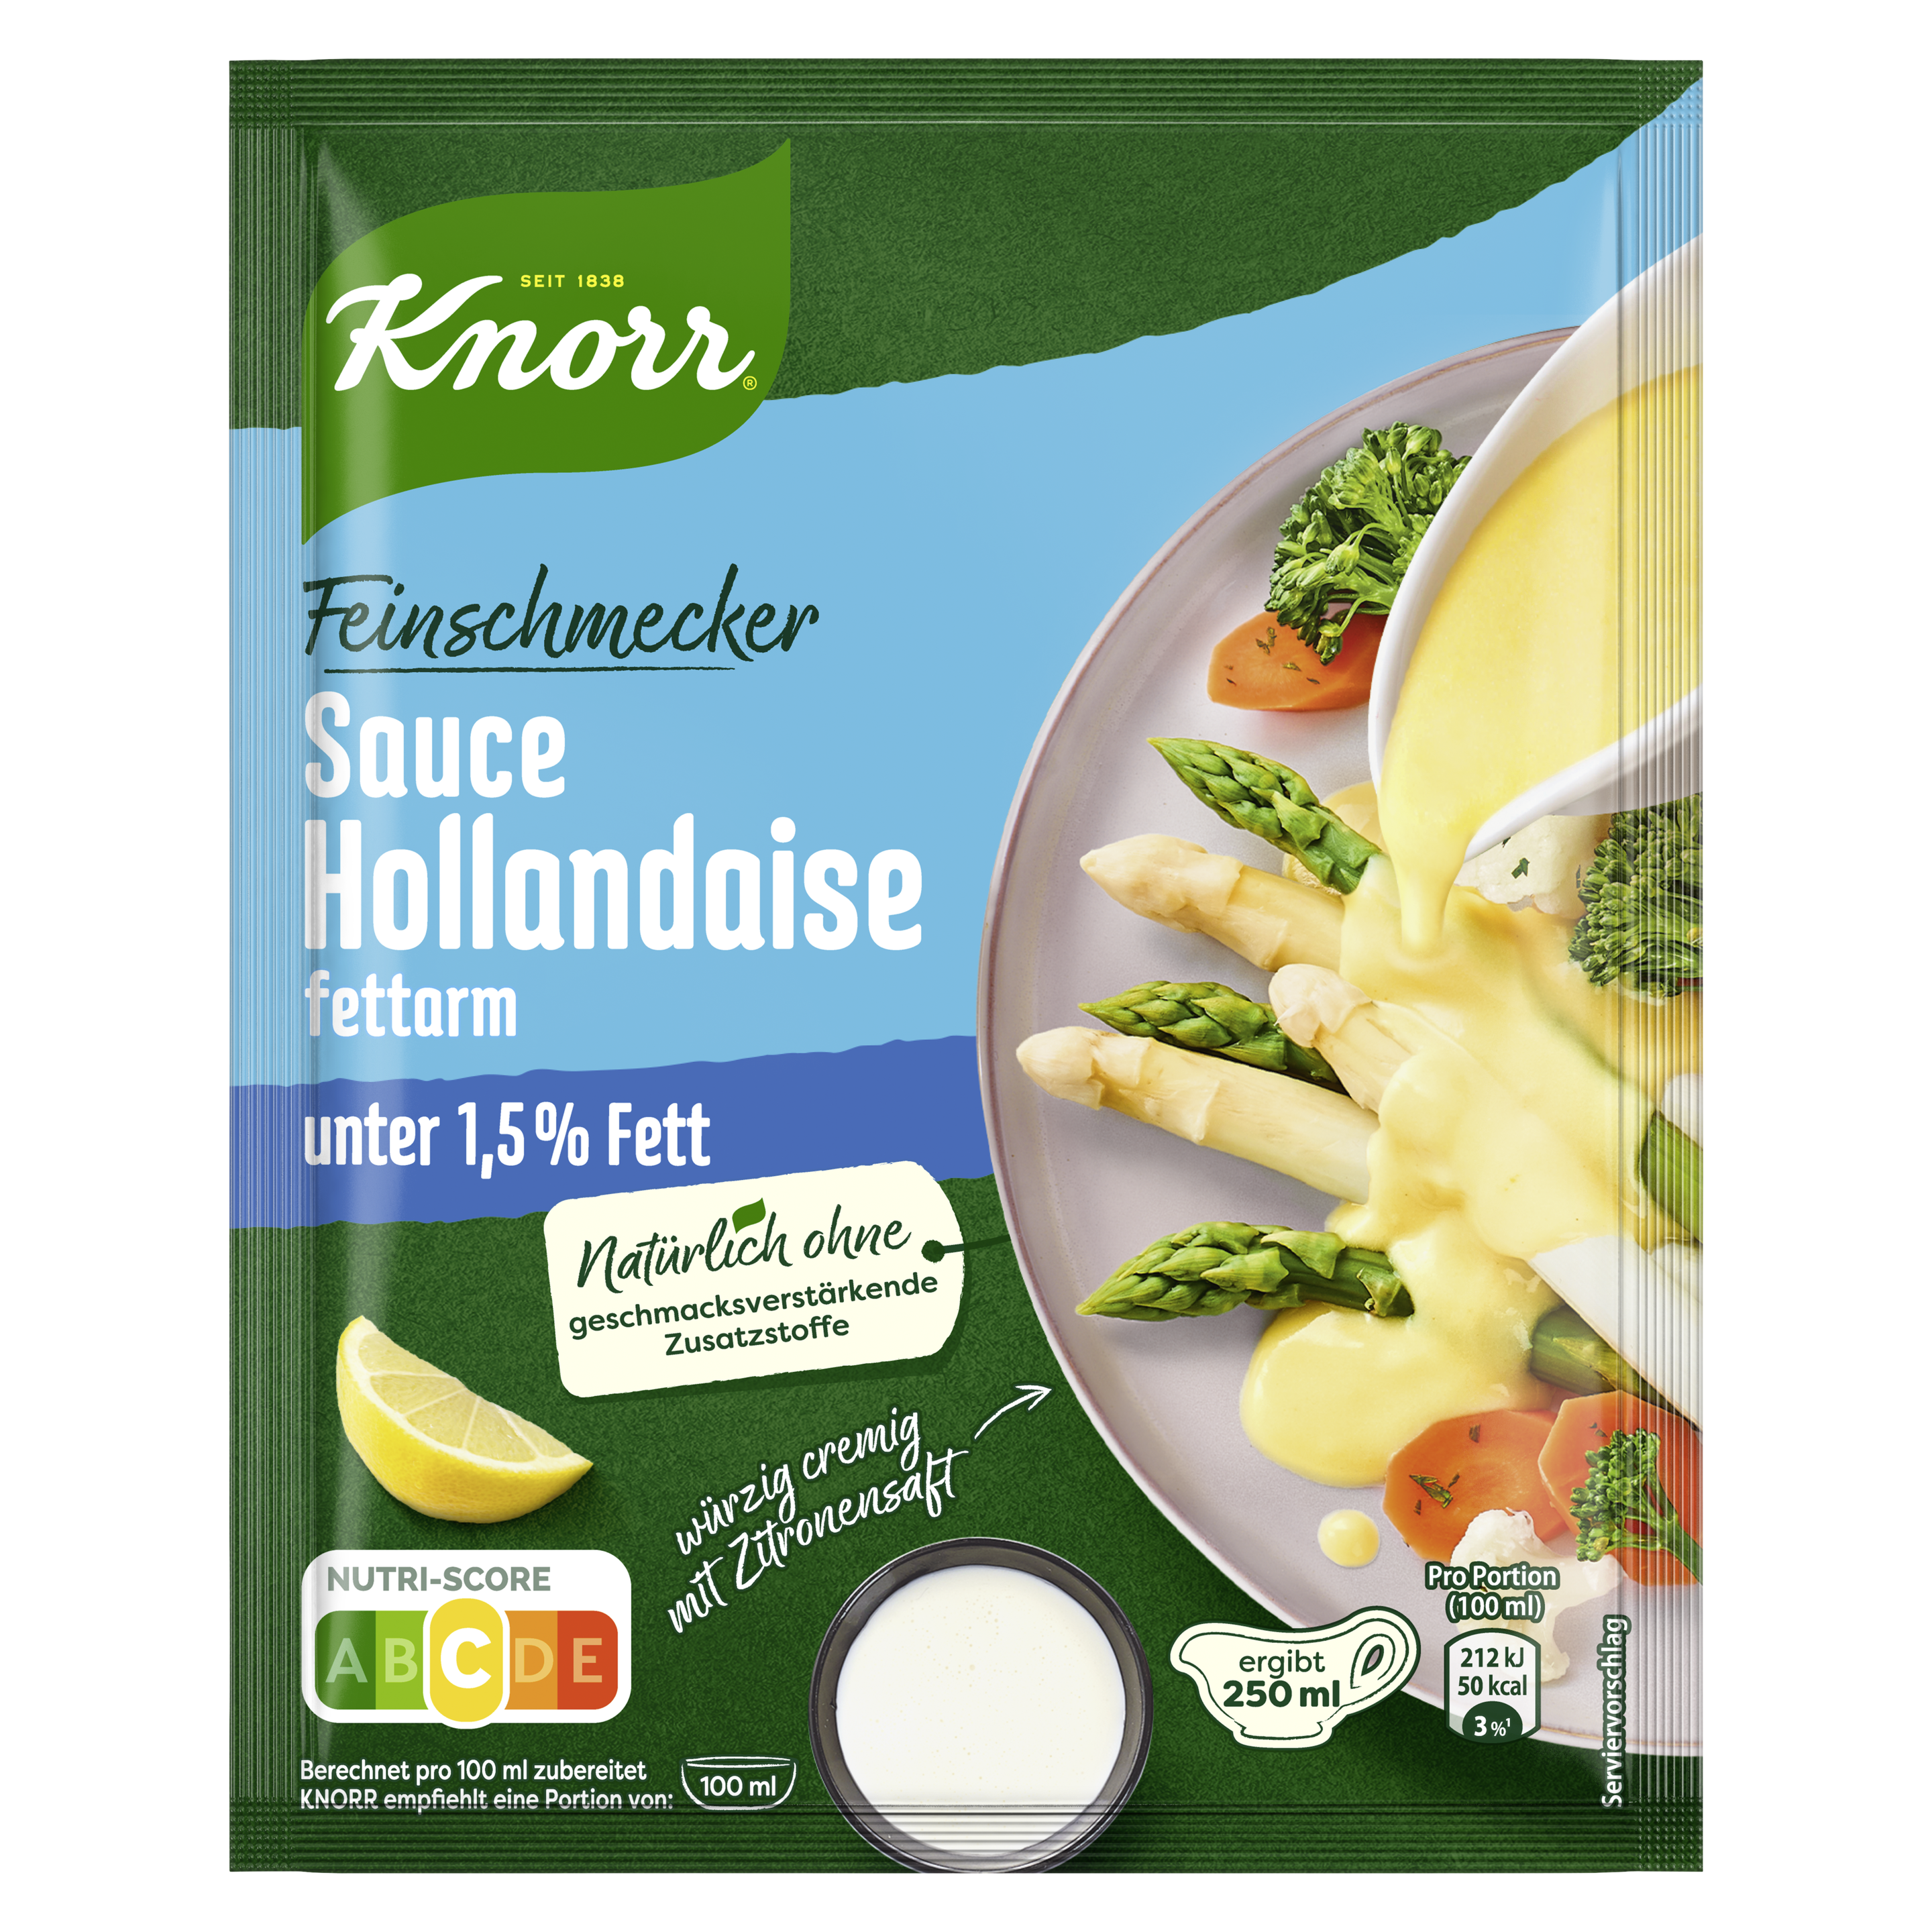 Knorr Feinschmecker Sauce Hollandaise fettarm ergibt 250 ml | Knorr